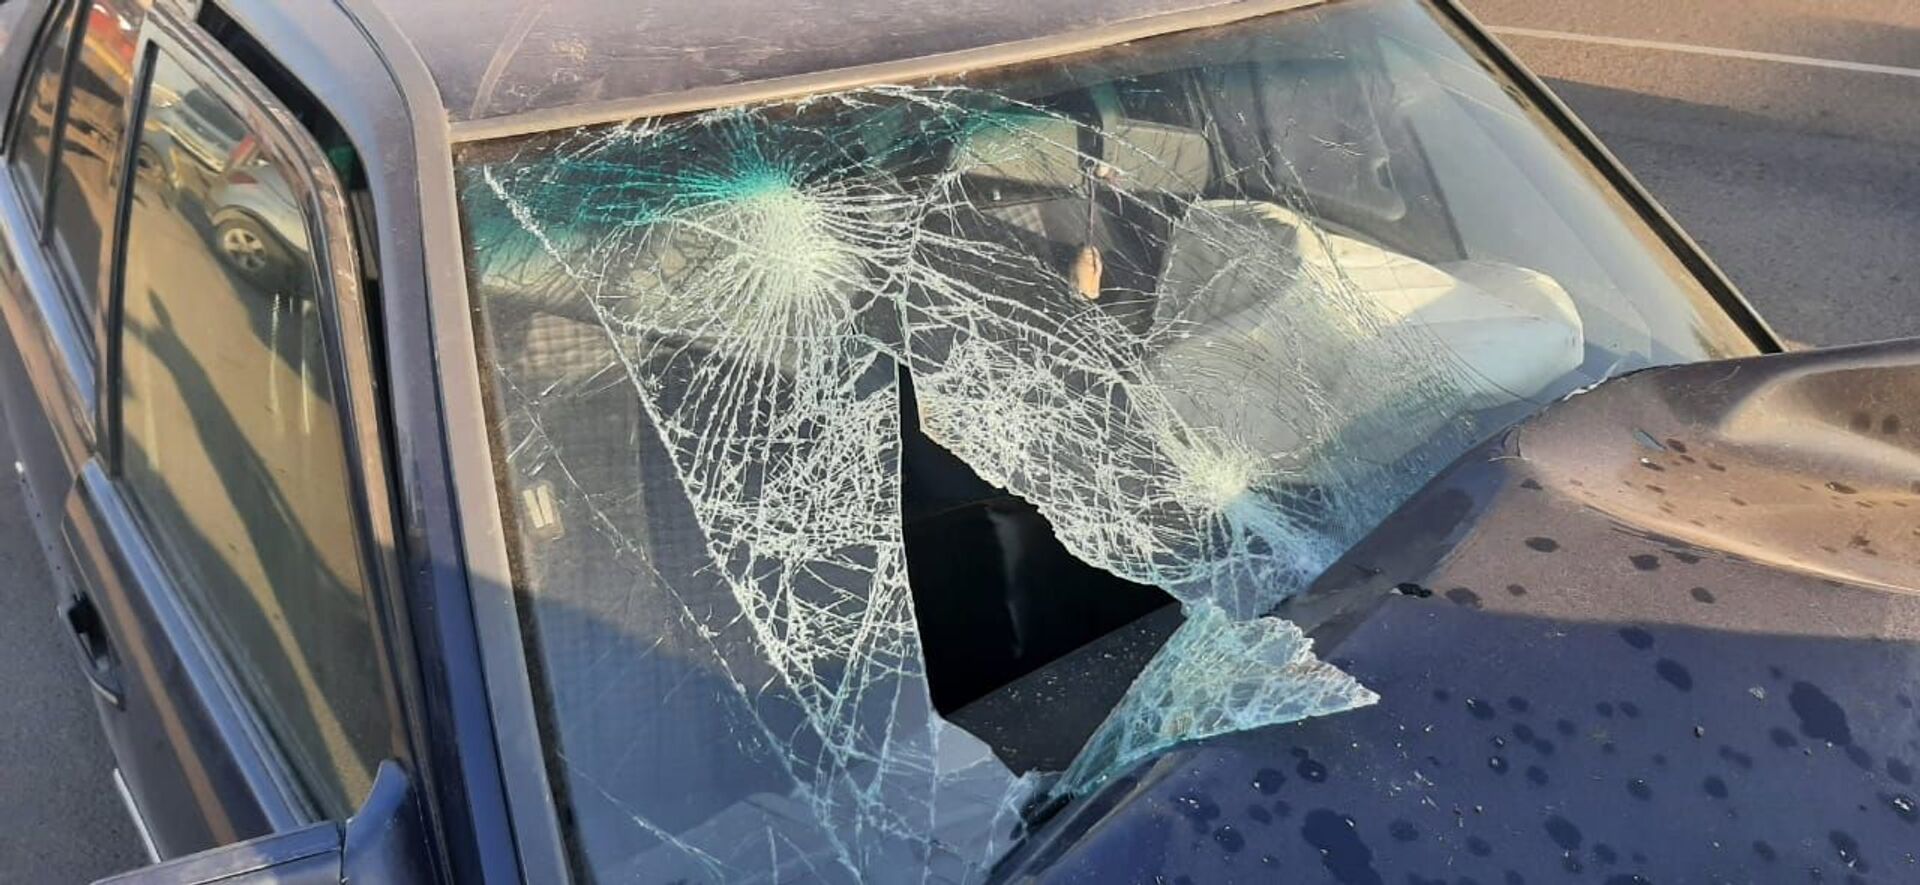 Автомобиль въехал в трактор в Алматы - пострадали два человека - Sputnik Казахстан, 1920, 19.03.2021